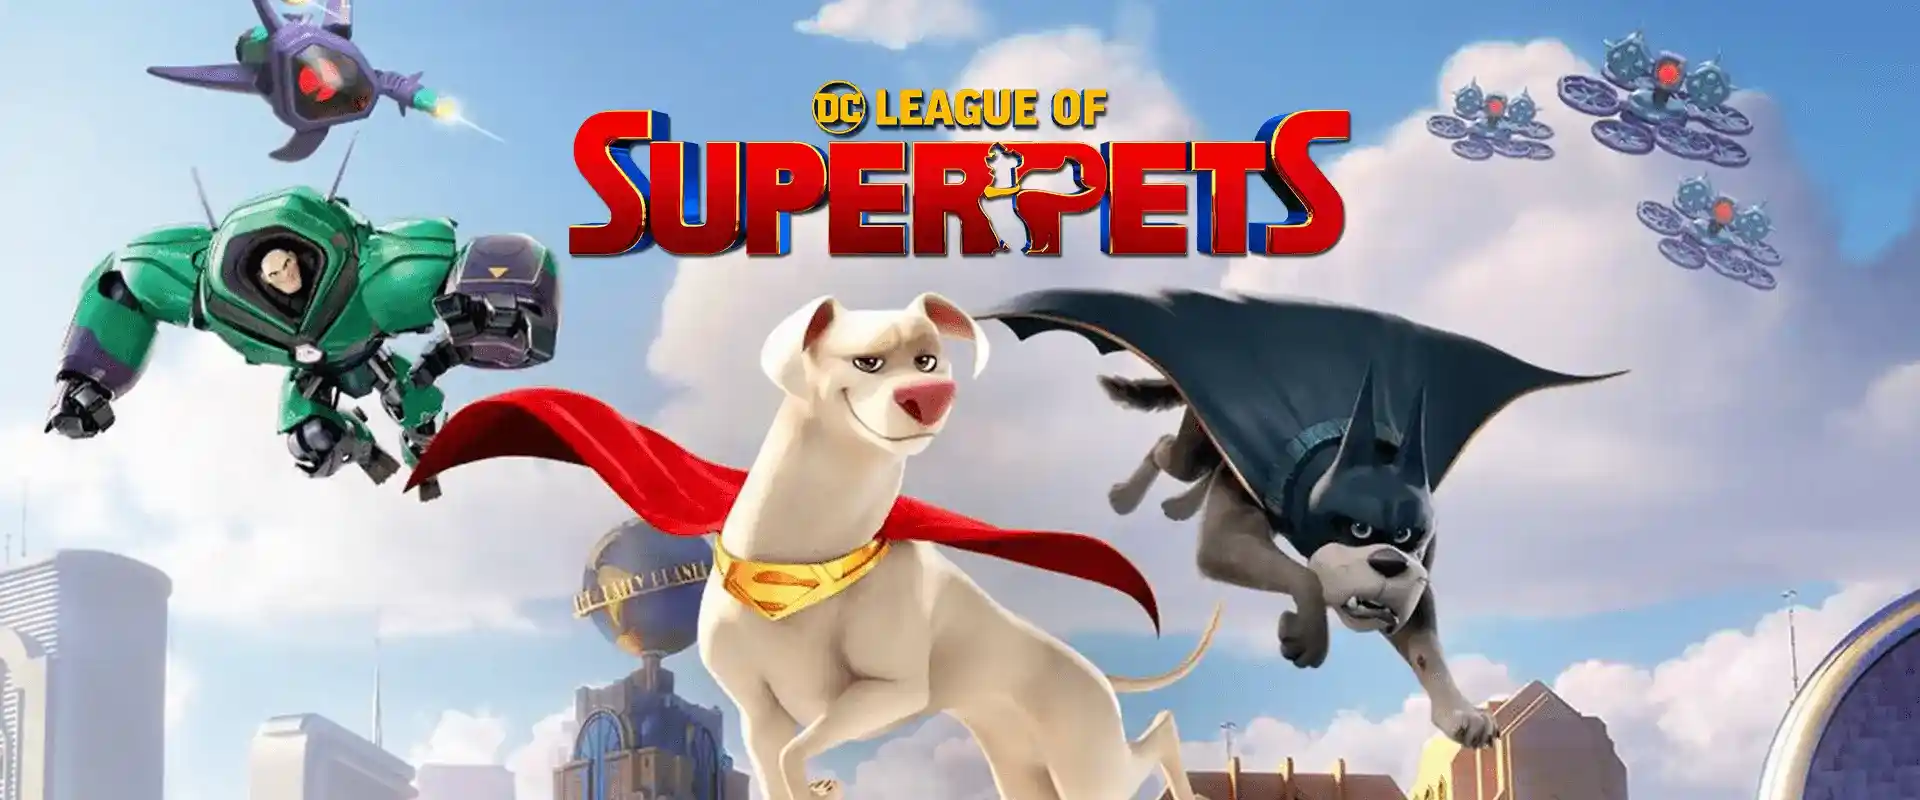 DC League of Super-Pets (2022) ขบวนการซูเปอร์เพ็ทส์ desktop